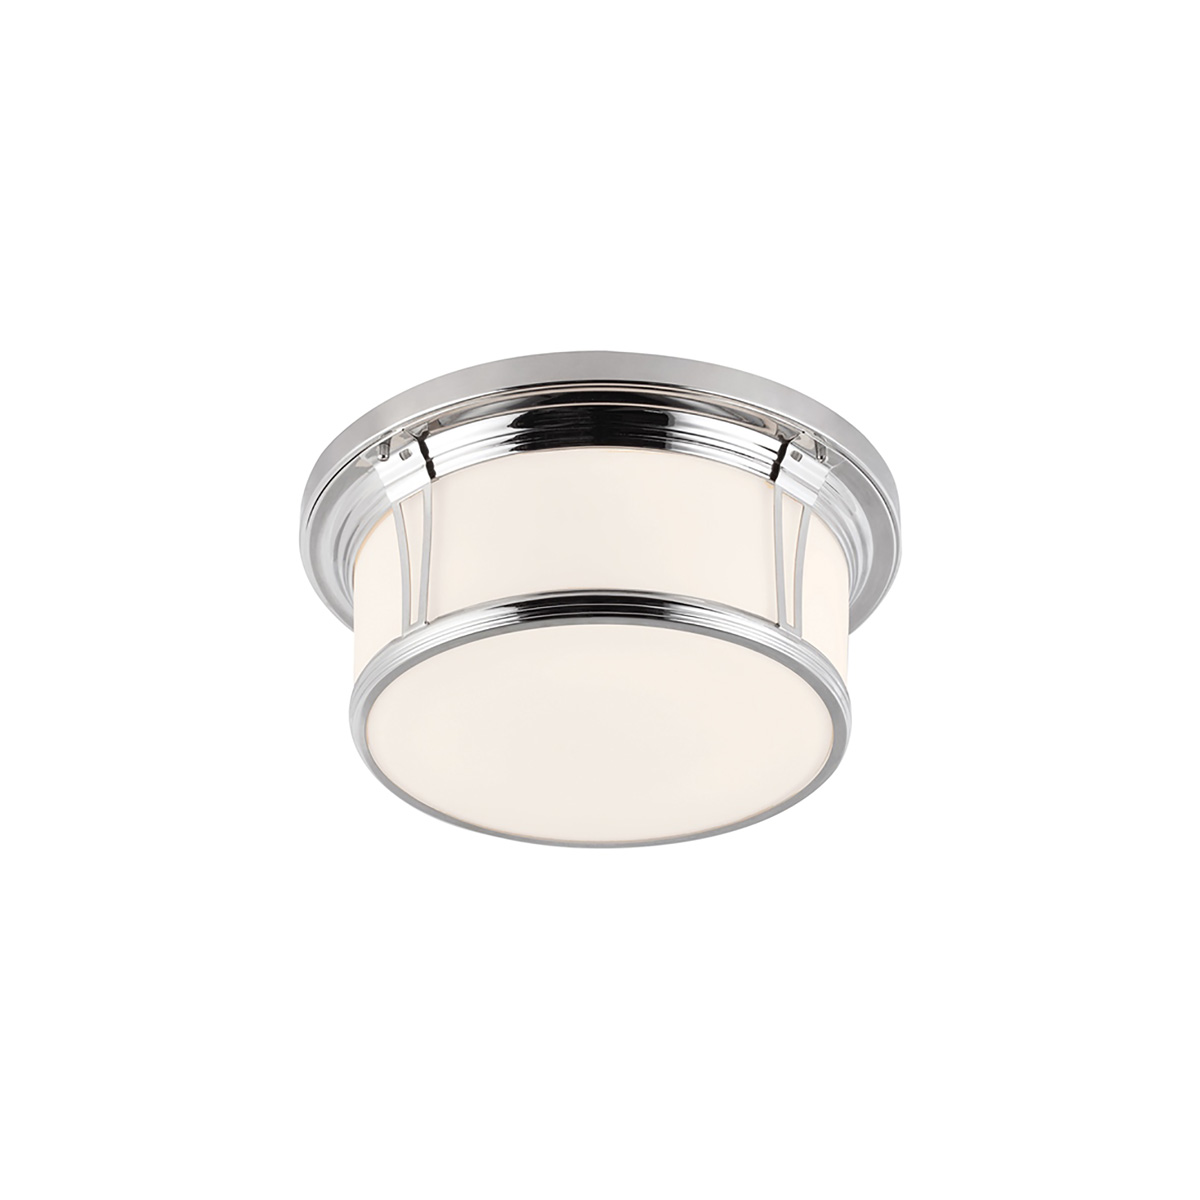 Потолочный светильник для ванных комнат FE-WOODWARD-F-L. Бренд: Feiss. Потолочные светильники для ванных комнат